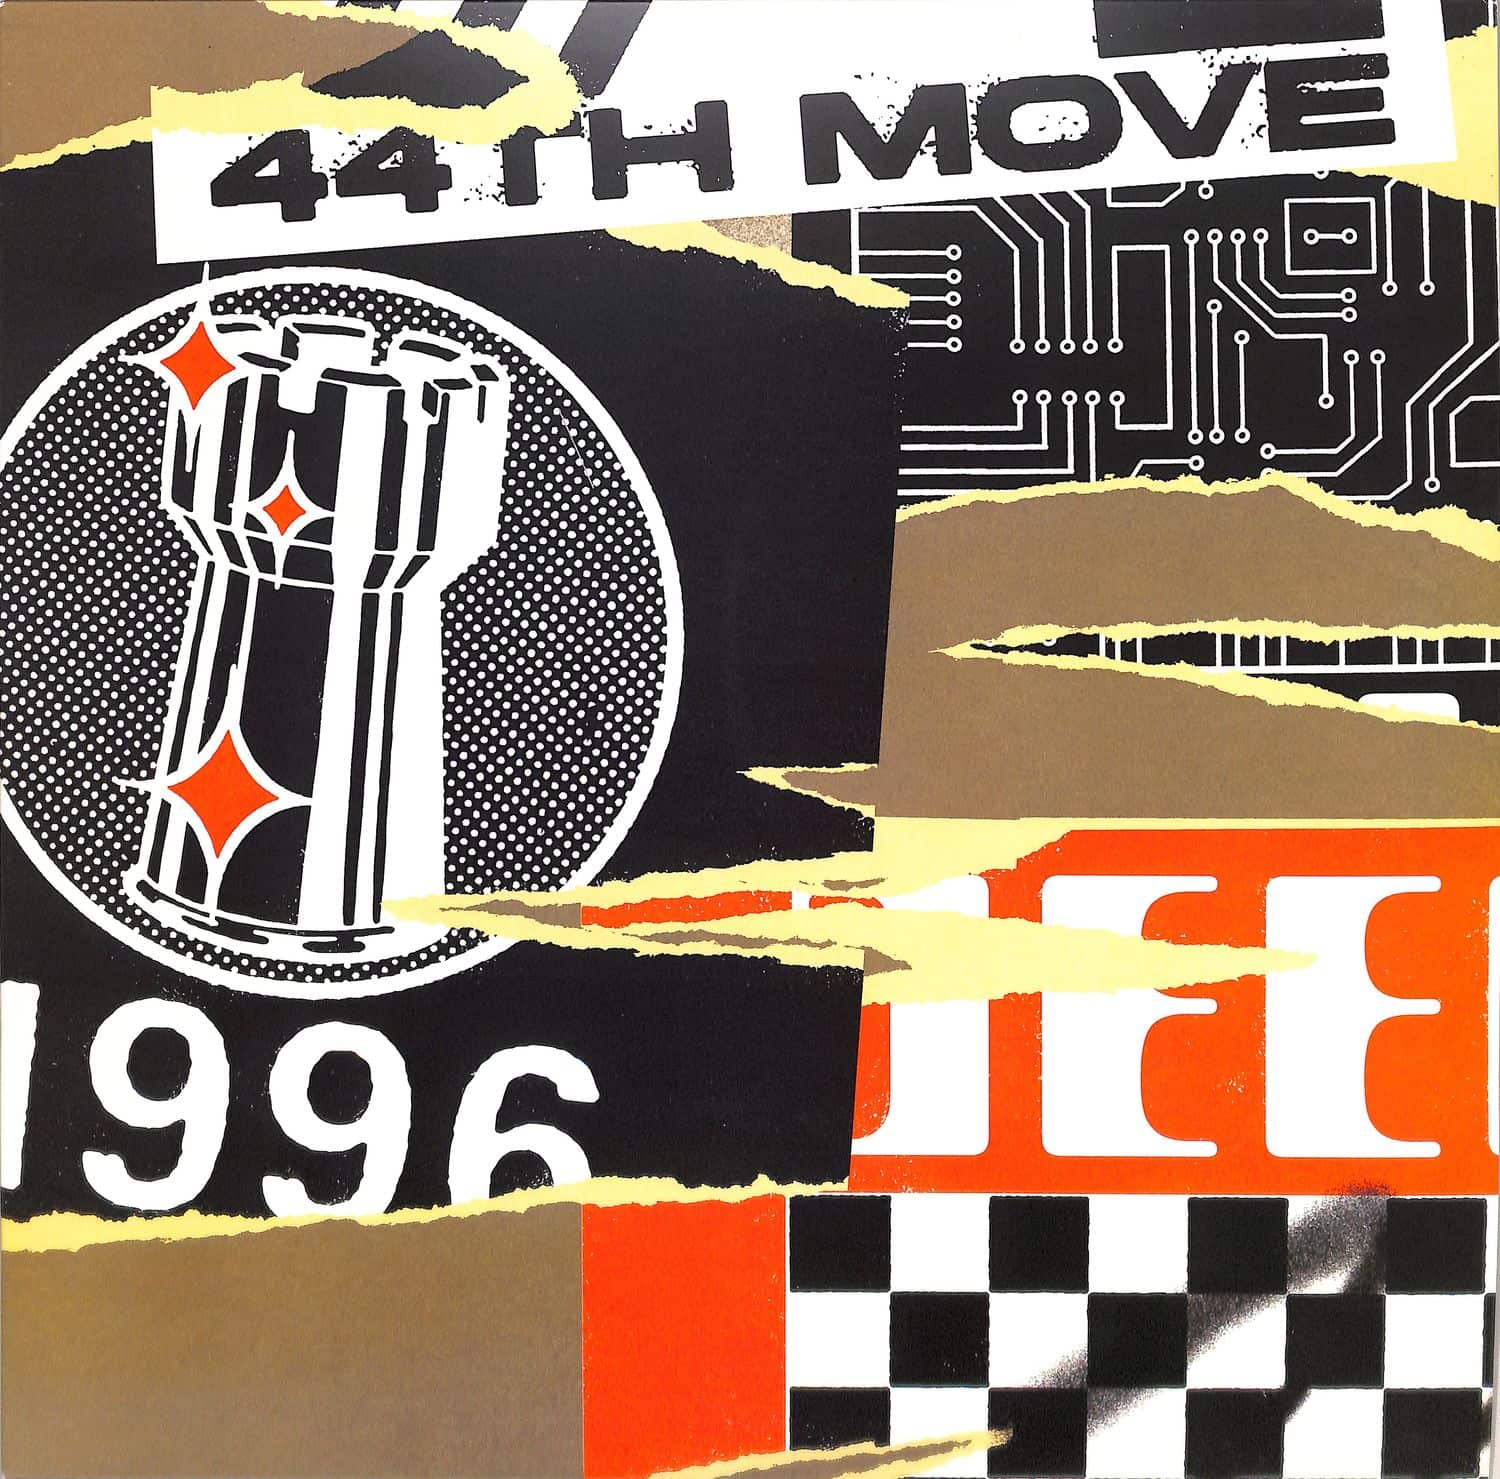 44th Move - 44TH MOVE